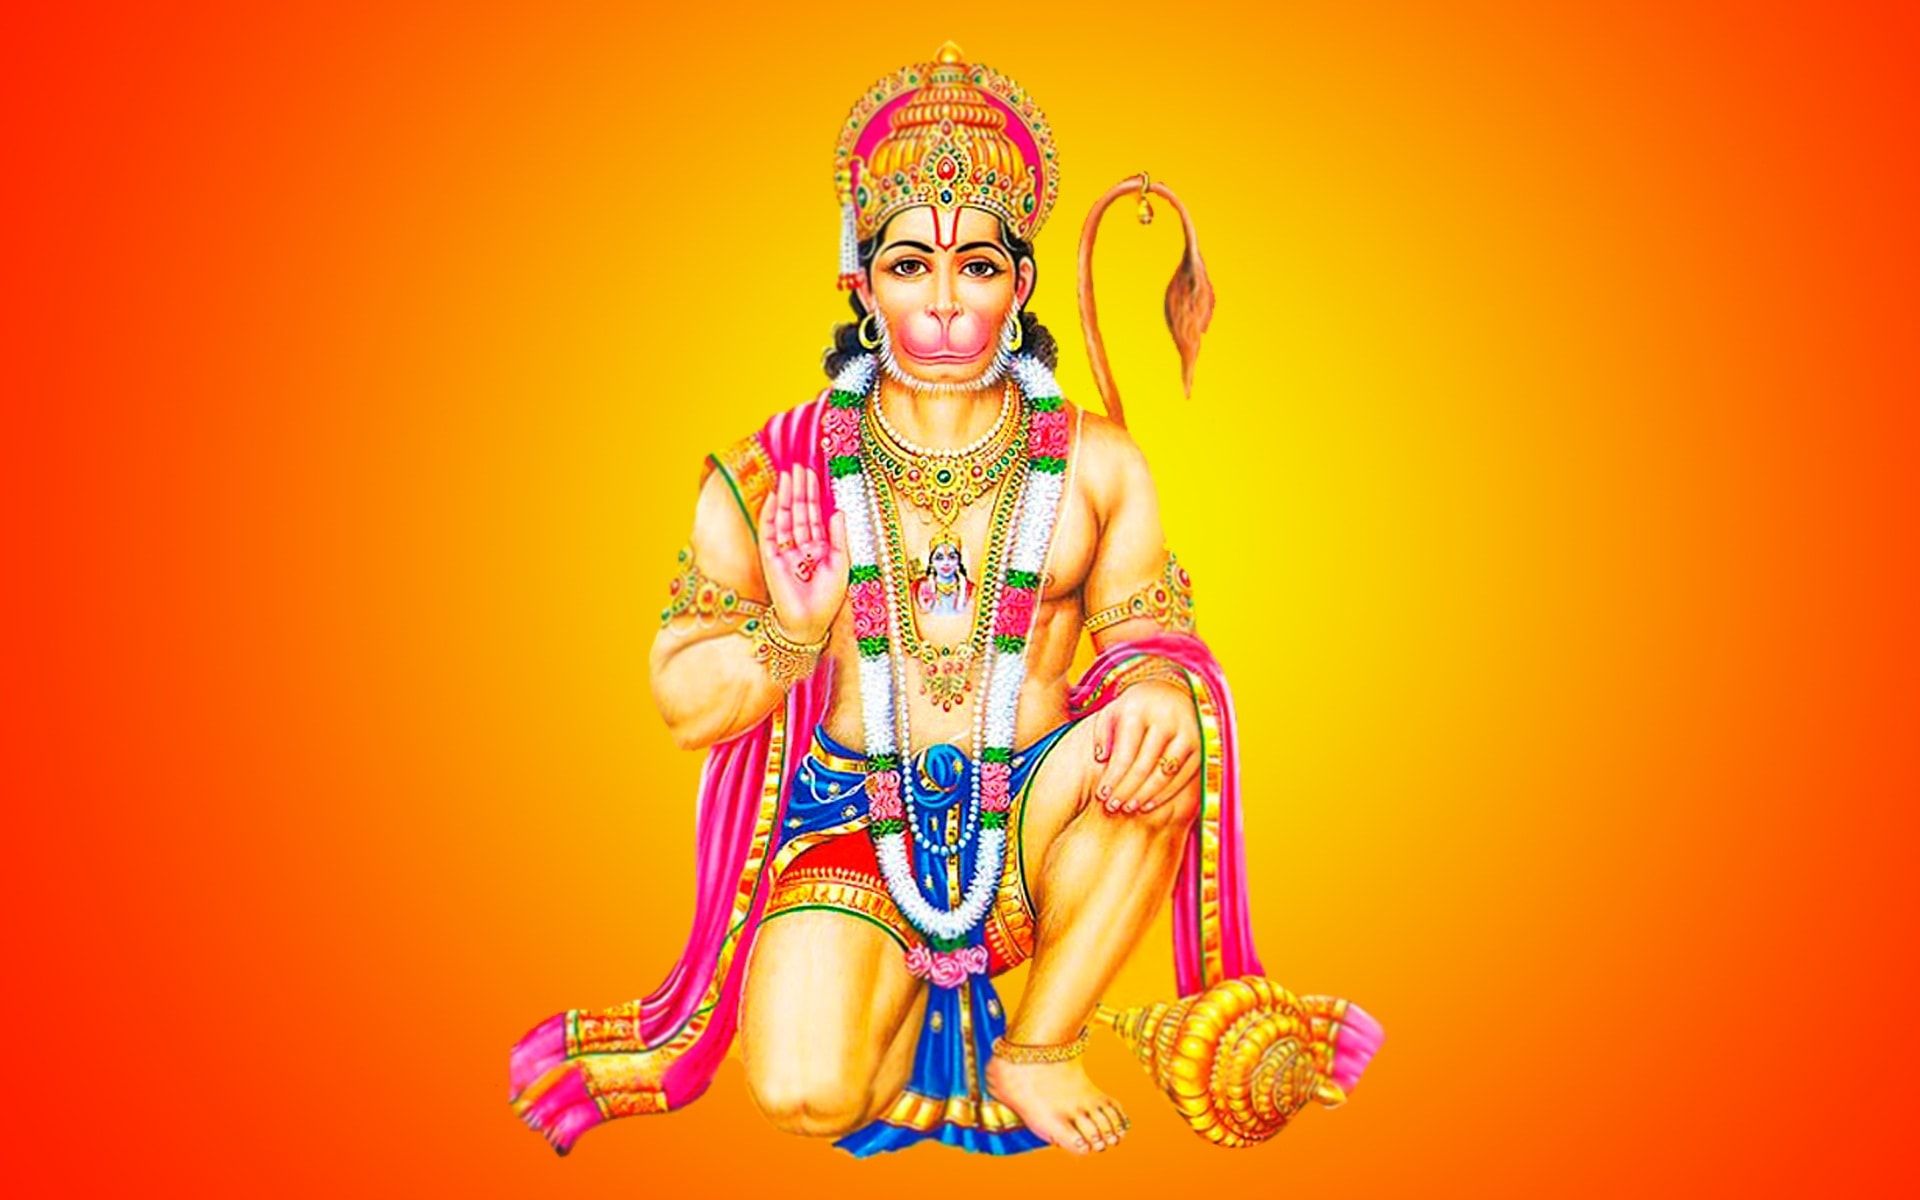  download Hanuman ji wallpapers